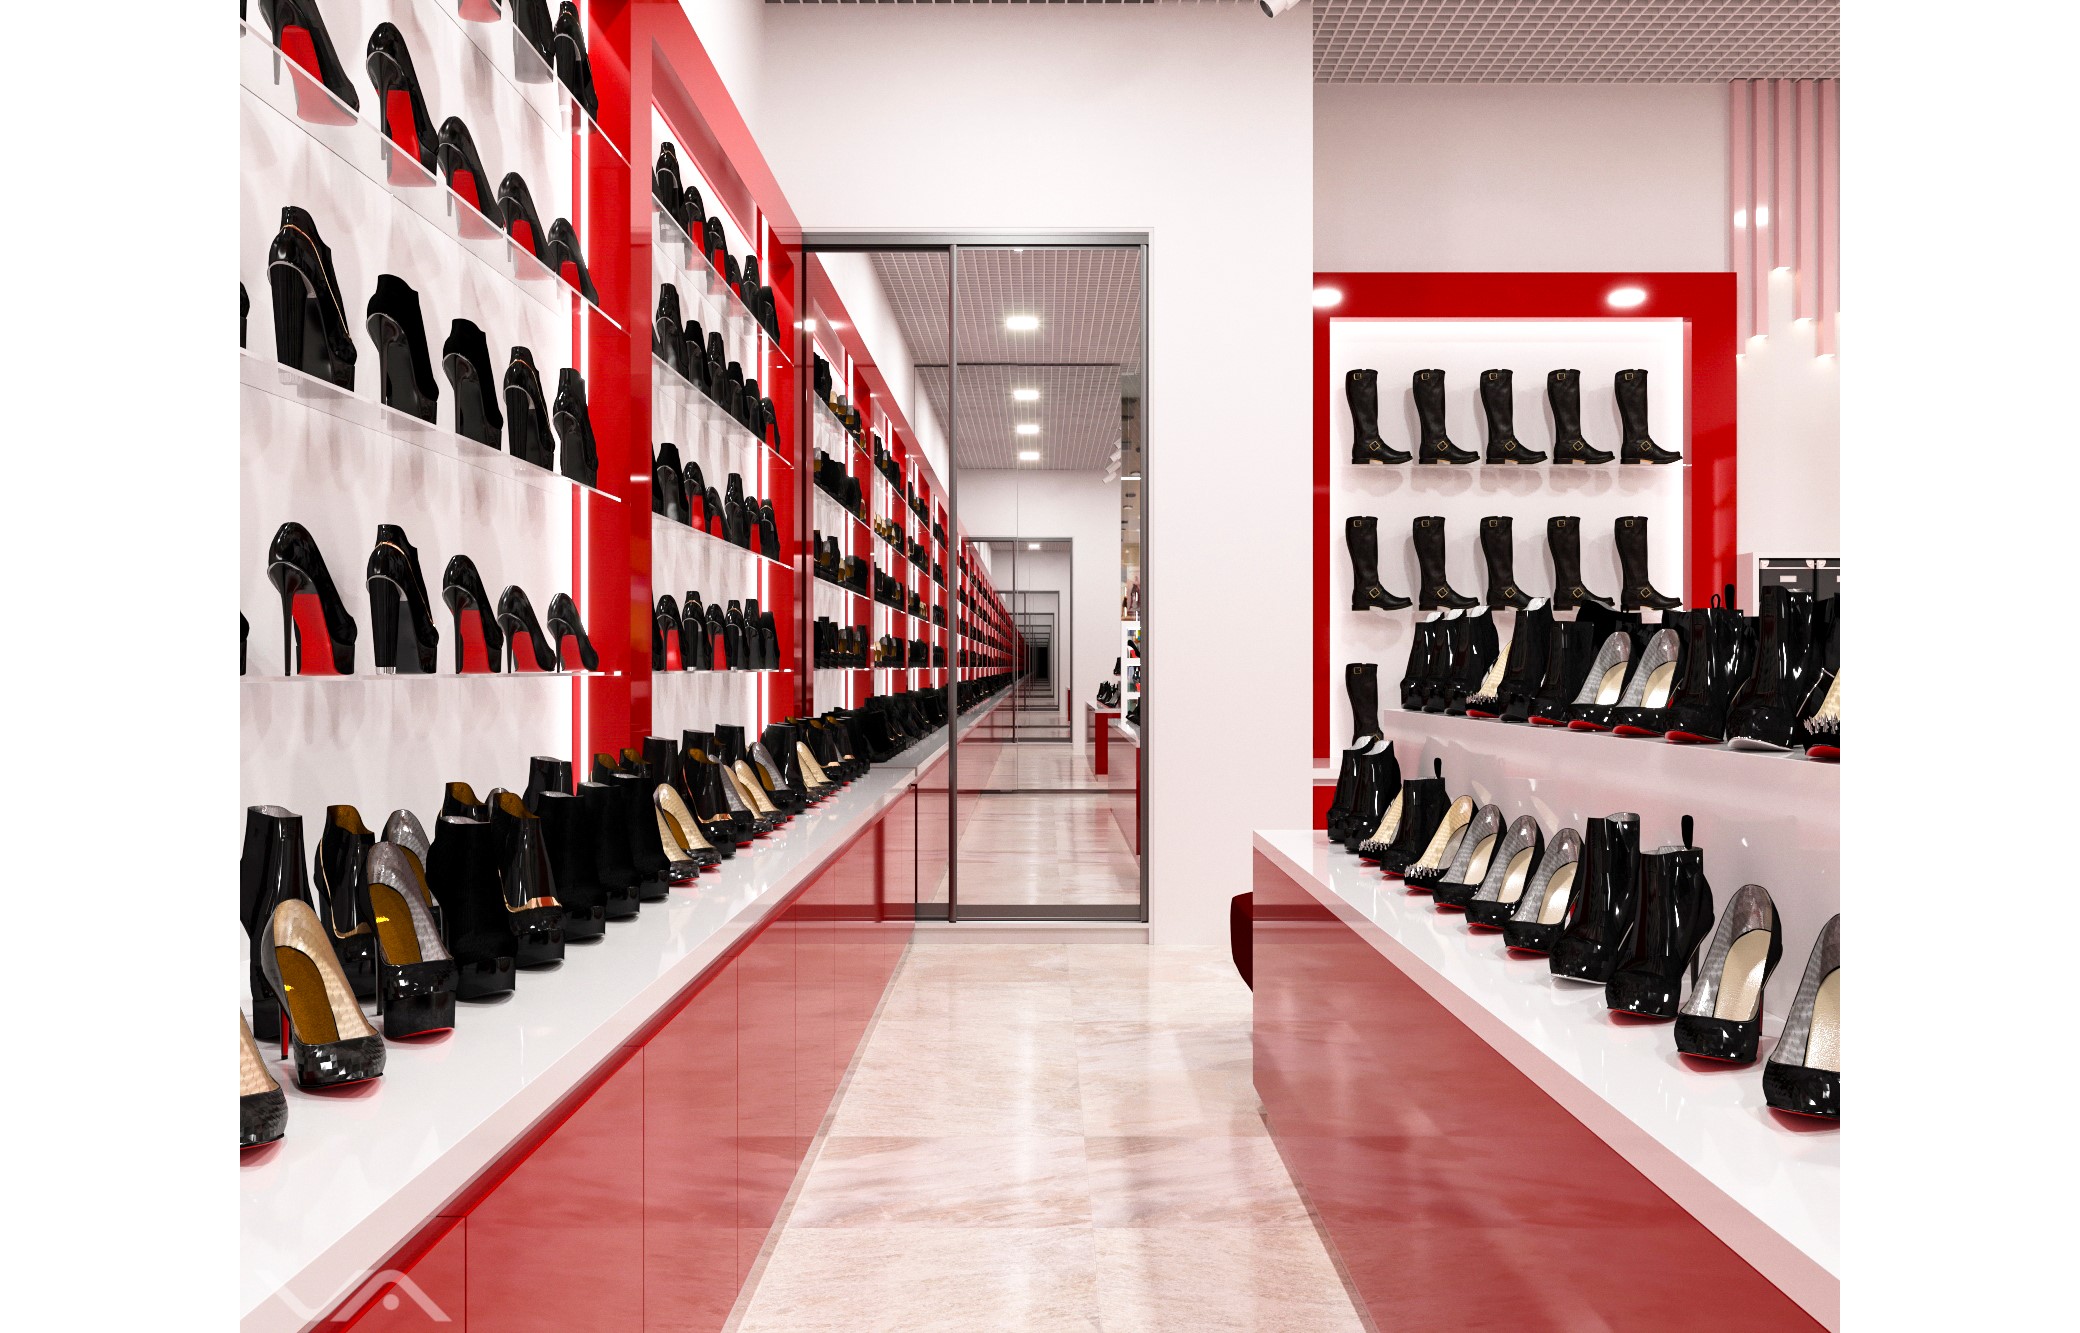 Стиль пешеход обувной магазин в москве каталог с ценами